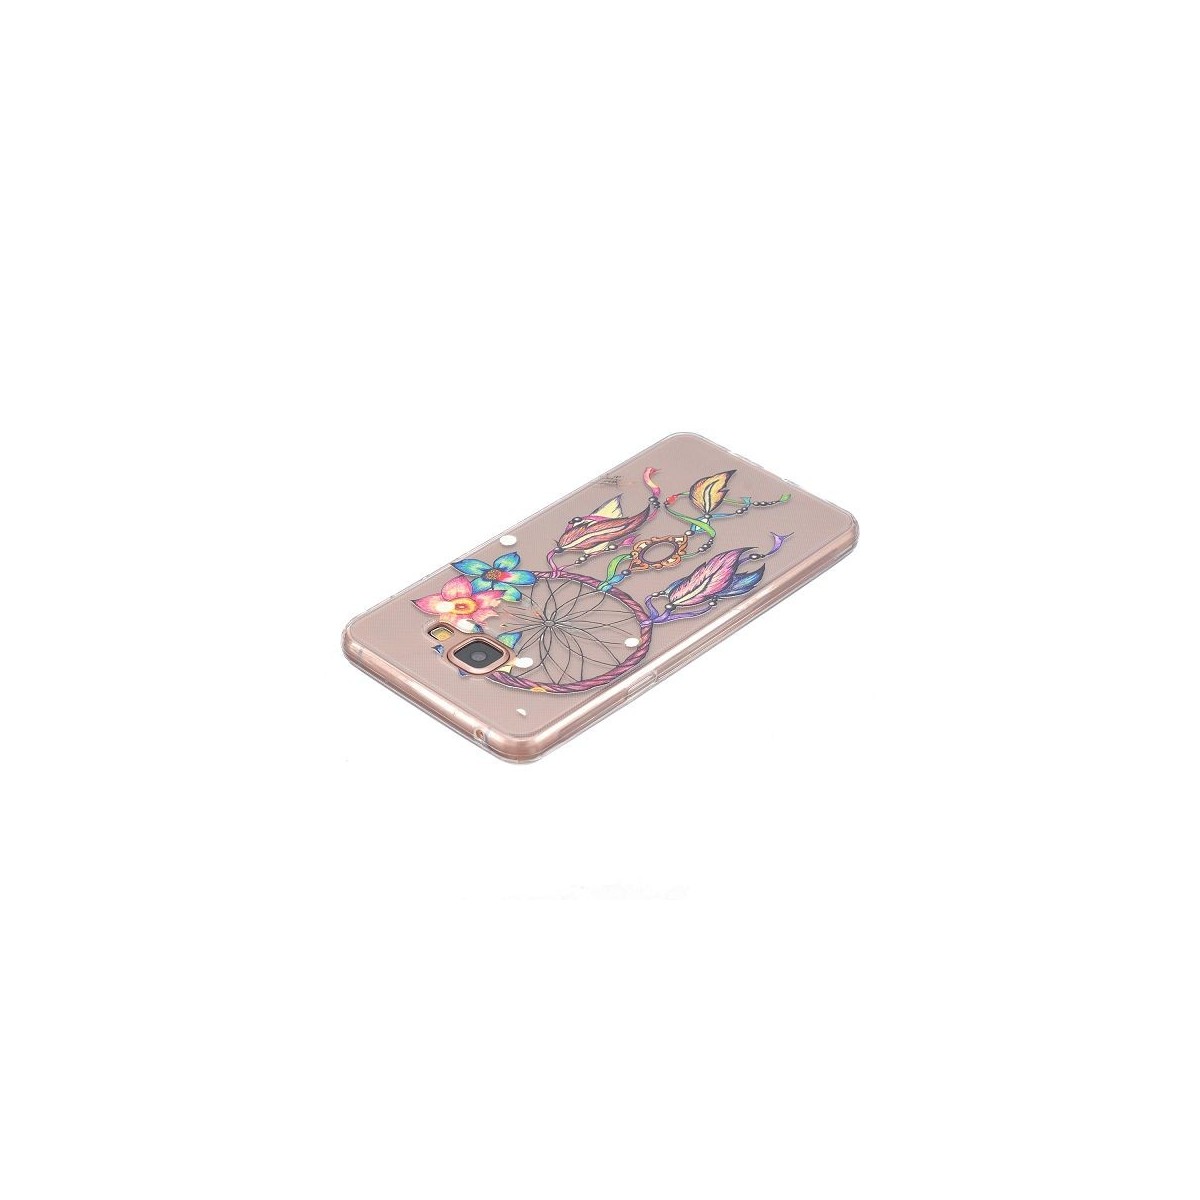 Coque Galaxy A5 (2016) Transparente souple motif Attrape Rêves Coloré et Fleurs - Crazy Kase